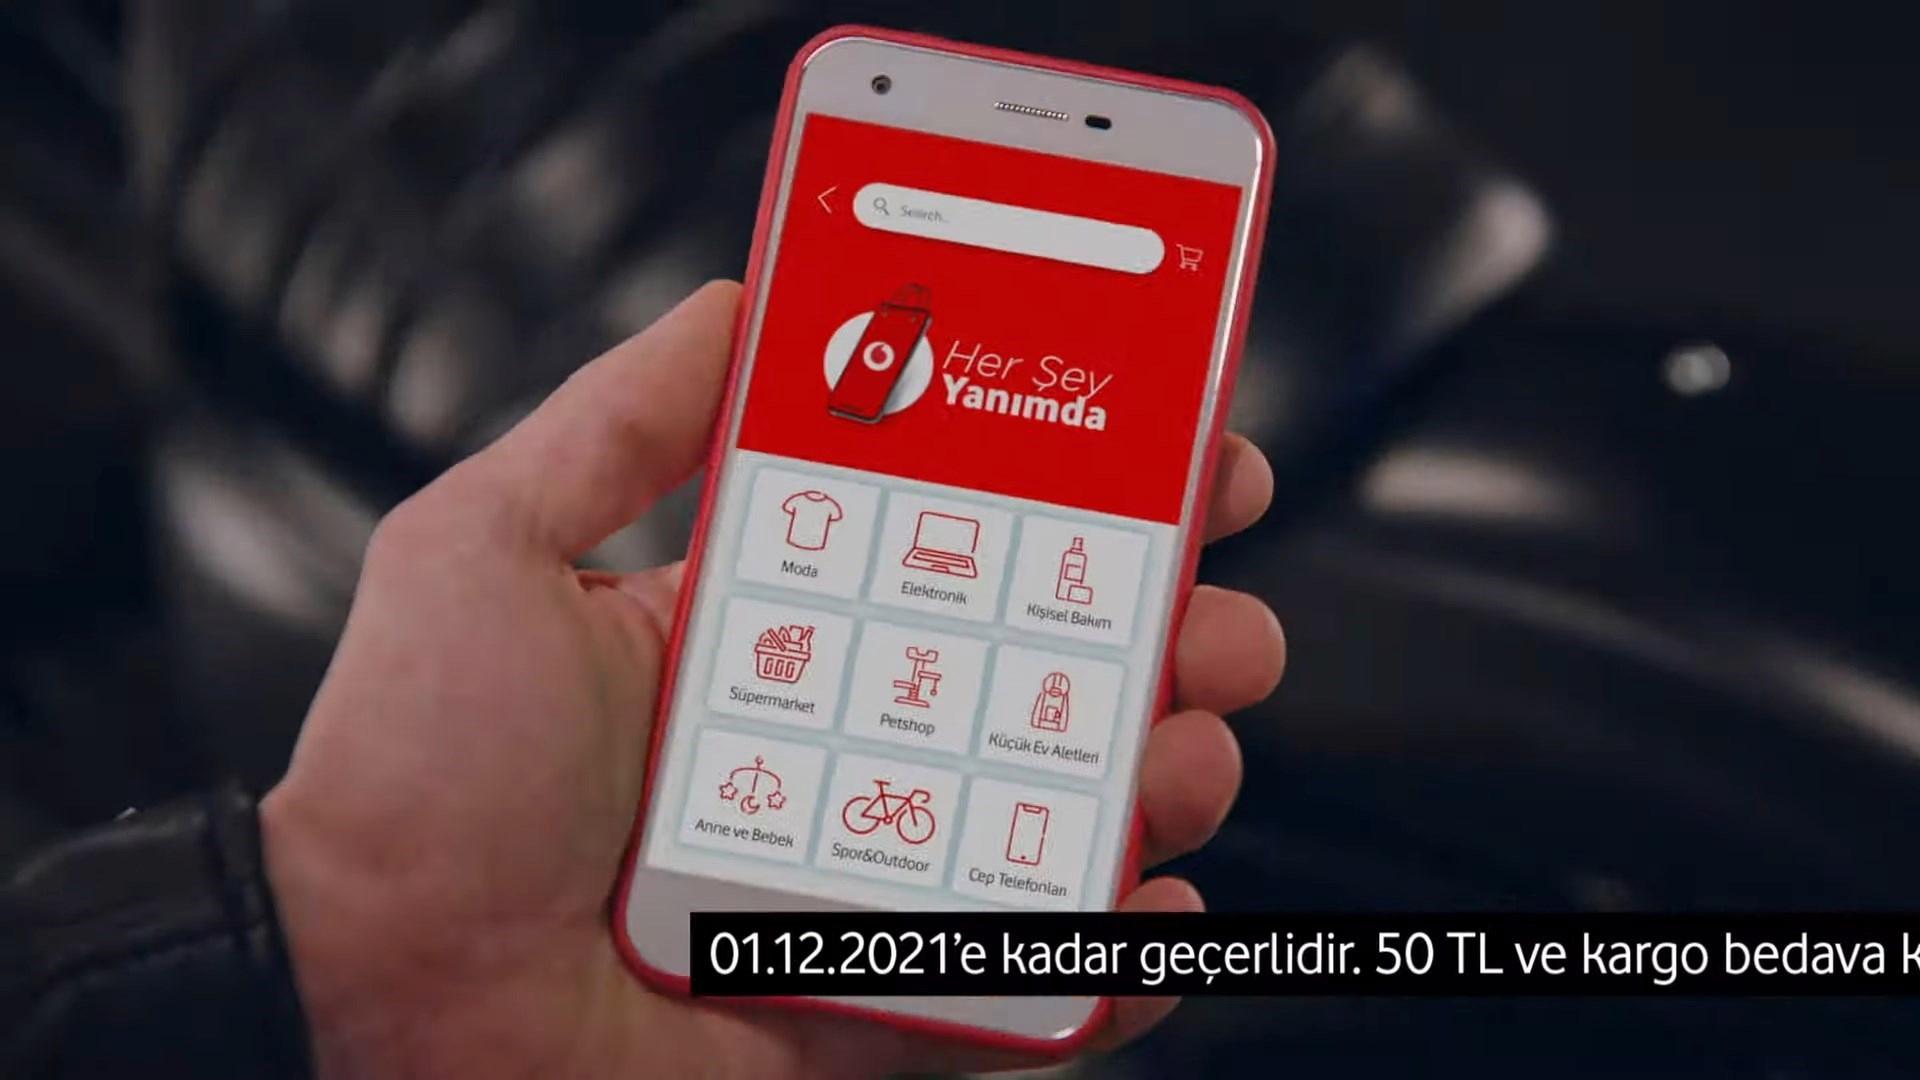 Vodafone Her Şey Yanımda’da “Karne Şenliği” indirimleri başladı